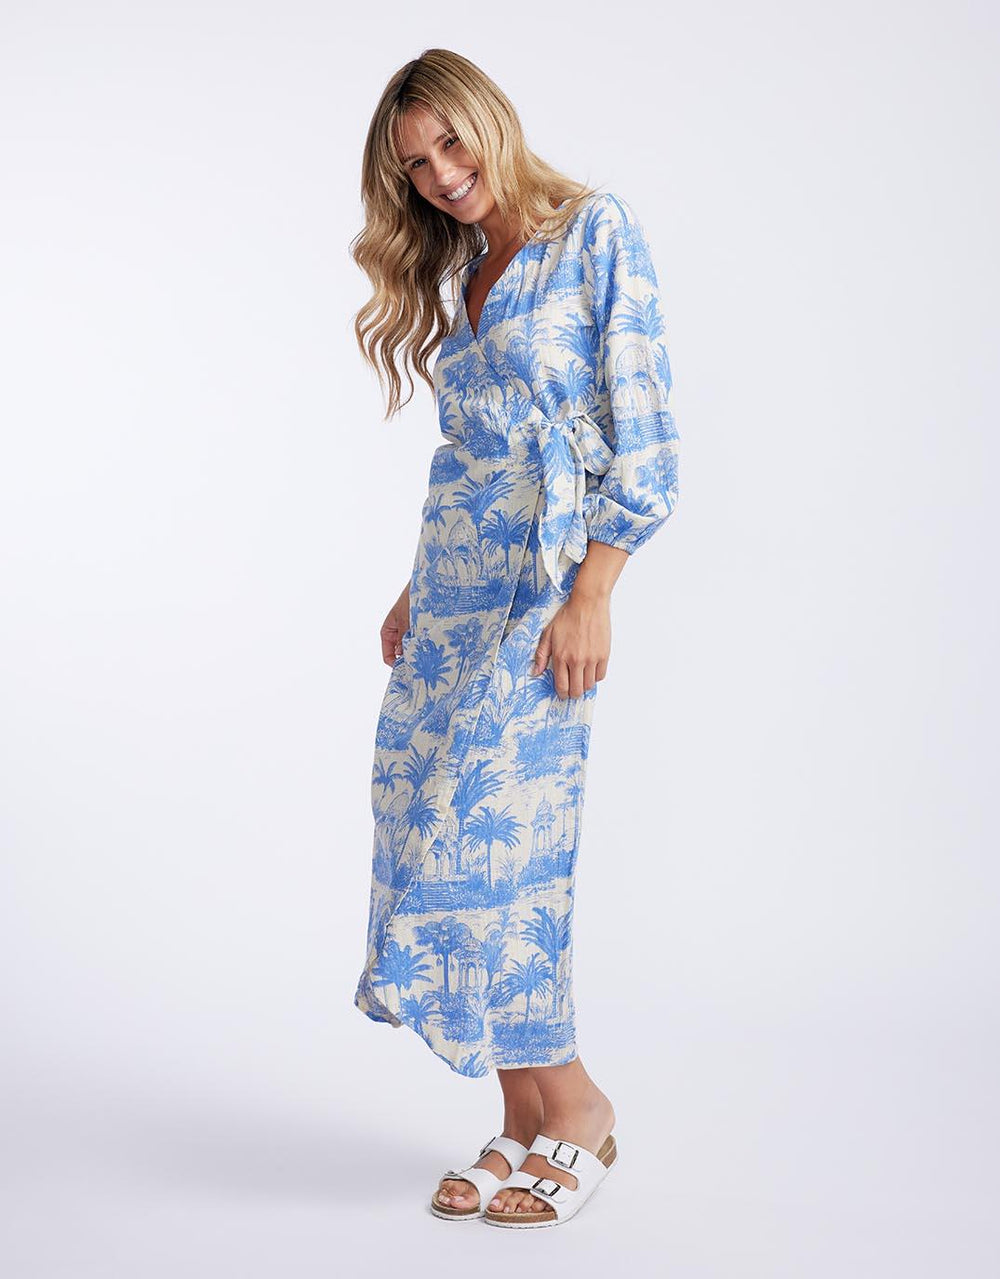 Florencia The Label - Porter Wrap Maxi Dress - Blue Palm Print - paulaglazebrook Dresses